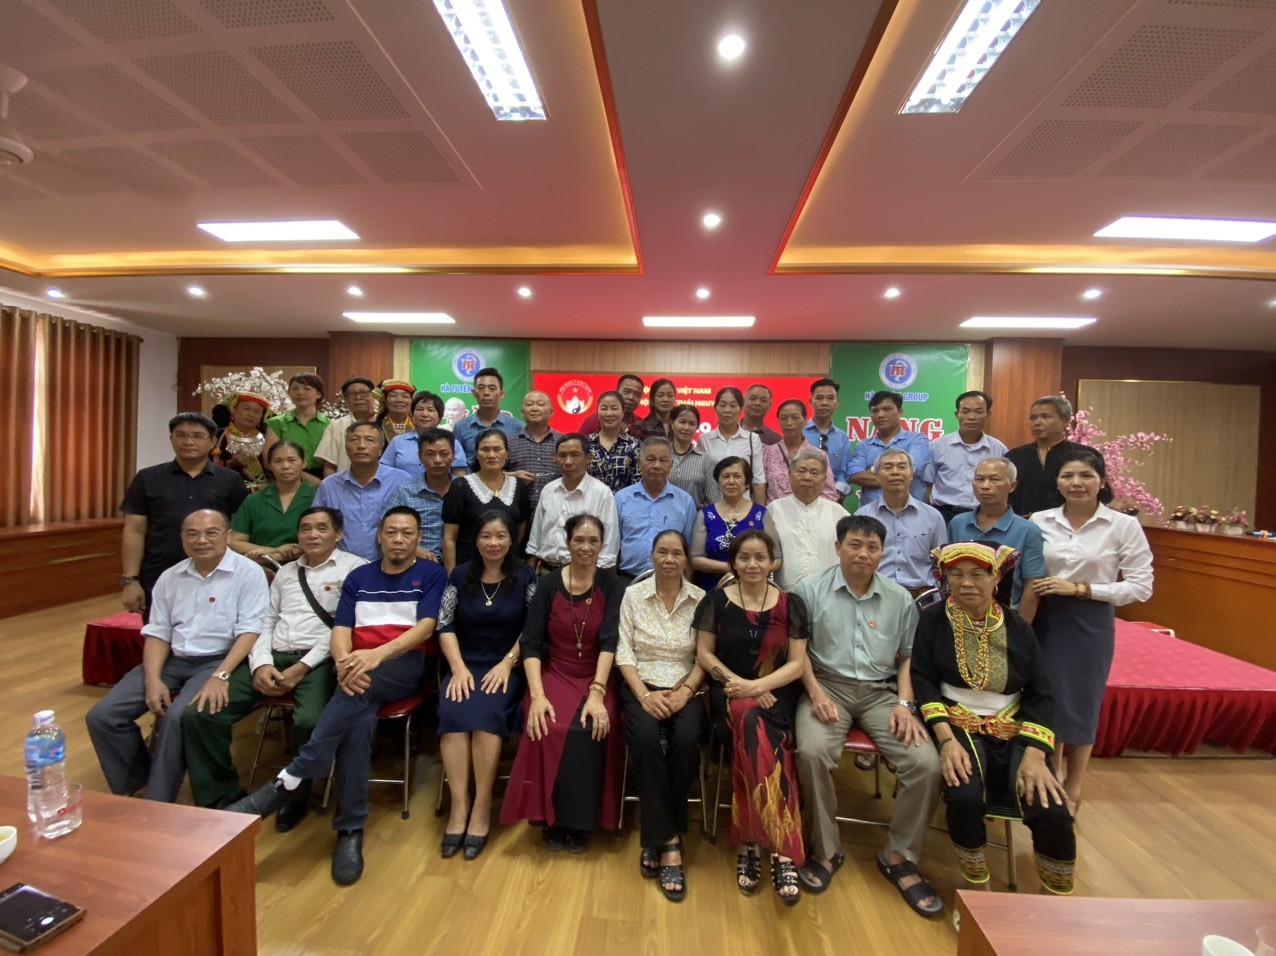 Chi hội Nam y tỉnh Thái Nguyên tổ chức hội thảo chia sẻ về bệnh xương khớp theo YHCT